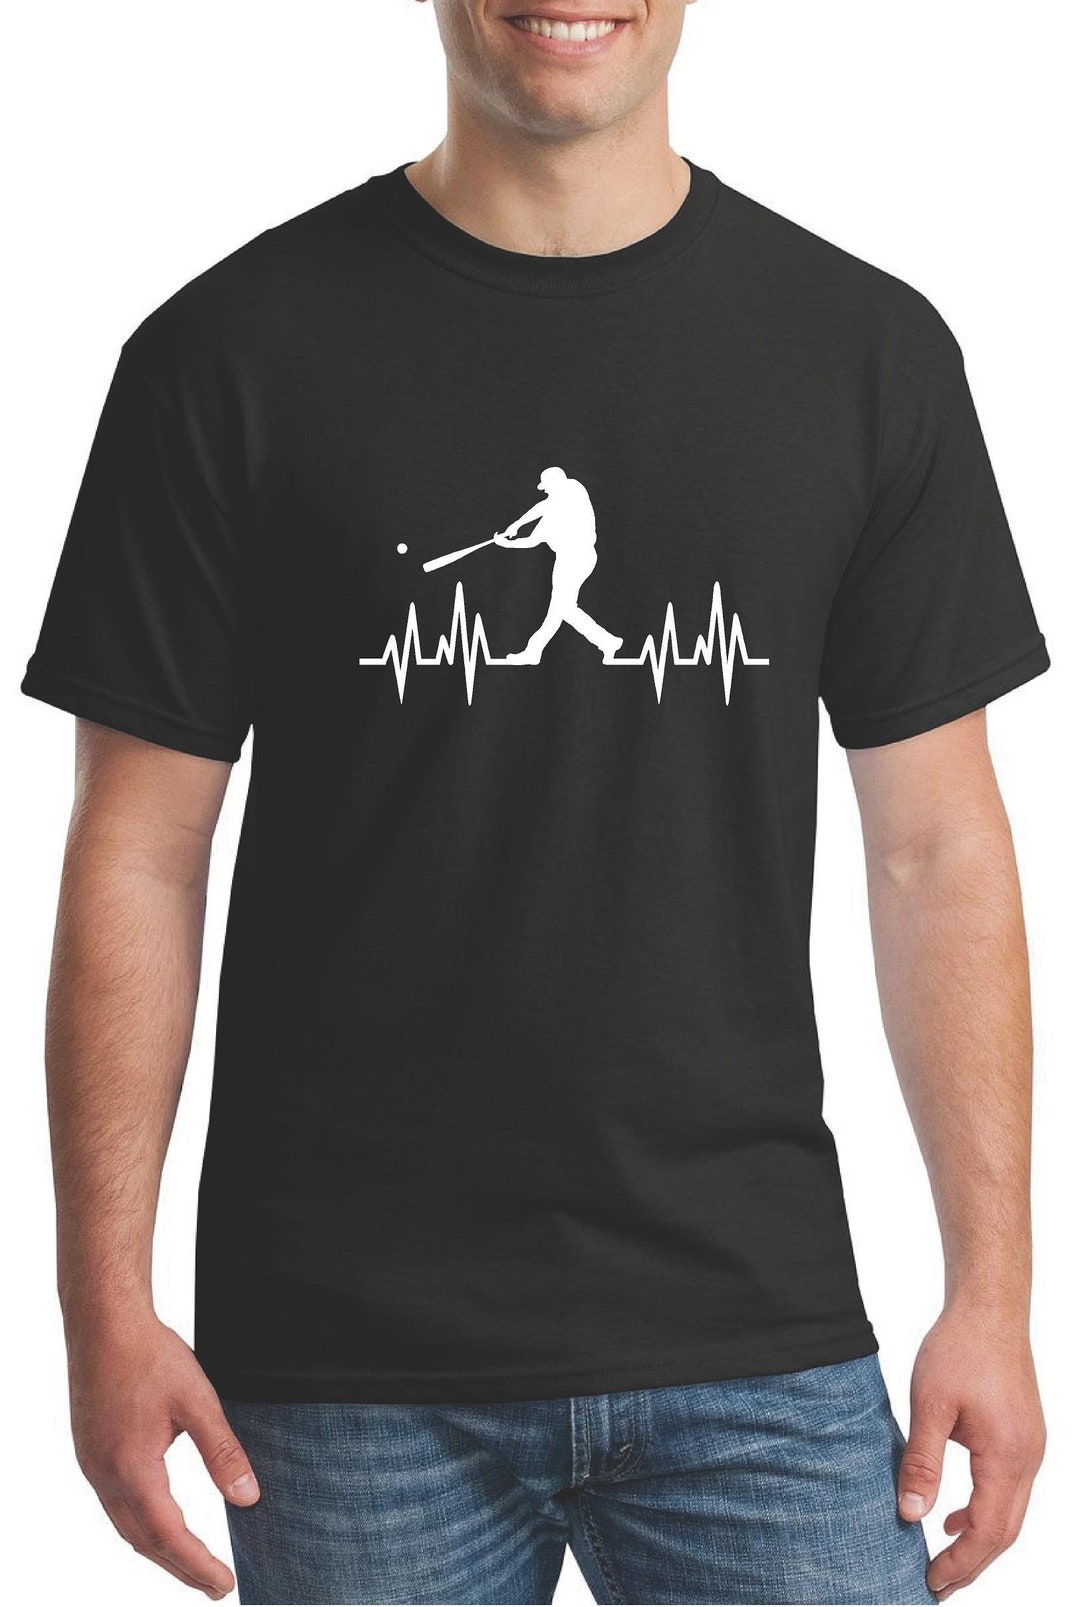 Baseball Shirt Sports Shirts Baseball Heartbeat Shirt - Etsy